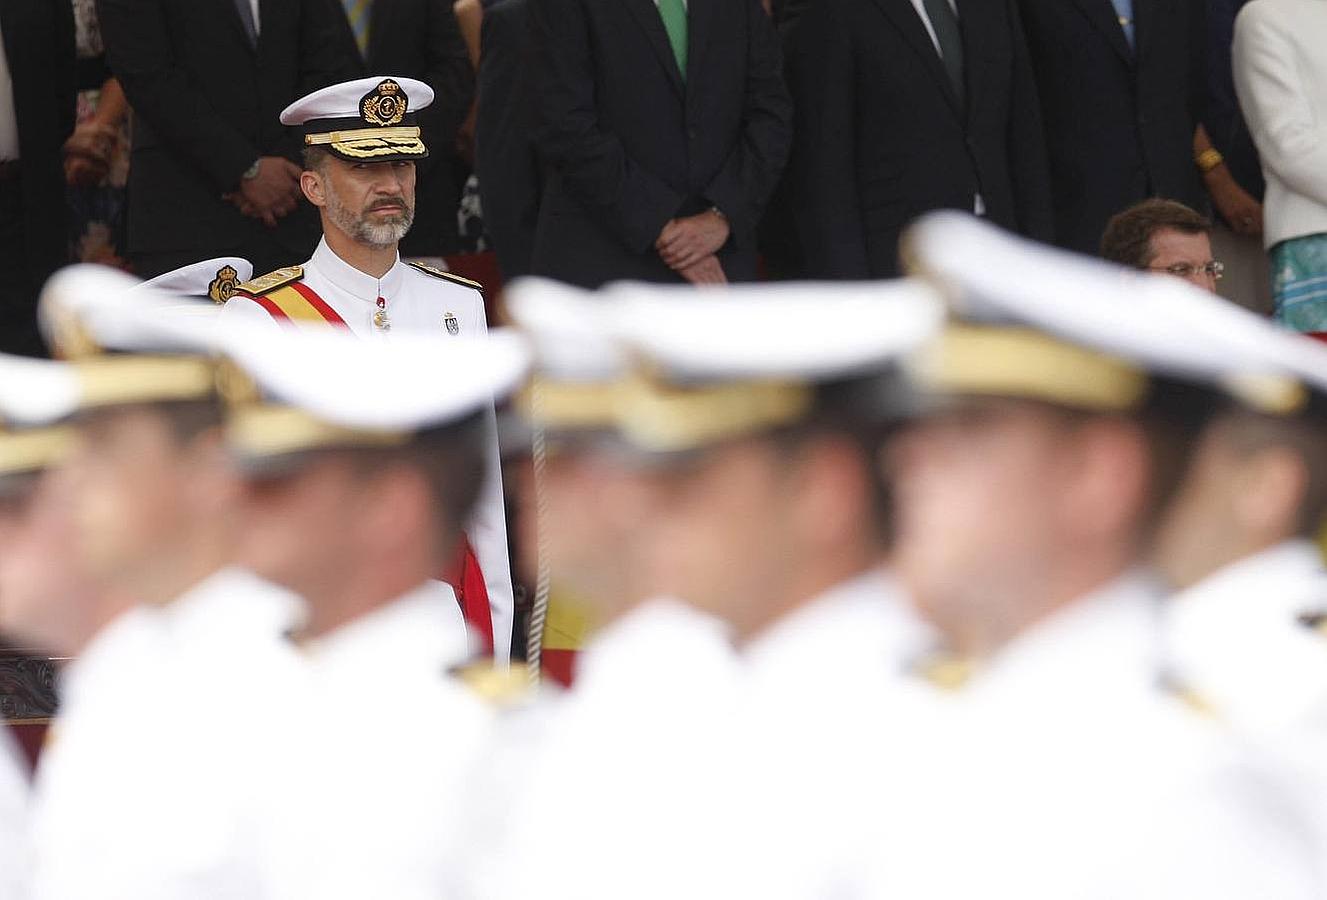 Felipe VI preside la ceremonia por primera vez como monarca